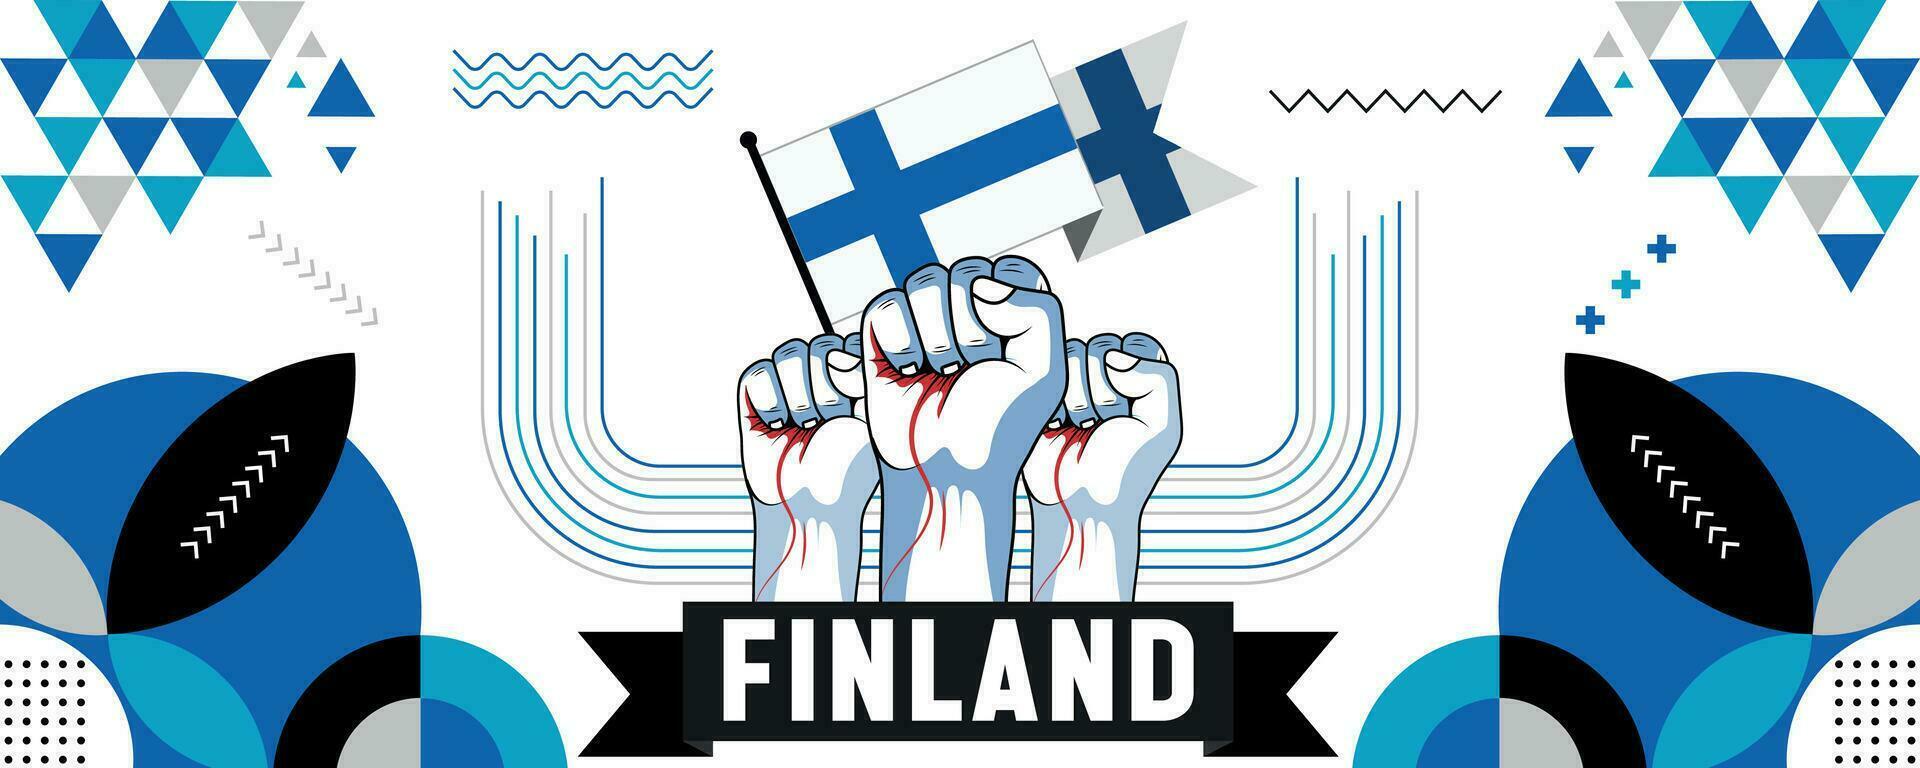 Finlandia nacional o independencia día bandera diseño para país celebracion. bandera y mapa de Finlandia con elevado puños moderno retro diseño con resumen geométrico iconos vector ilustración.